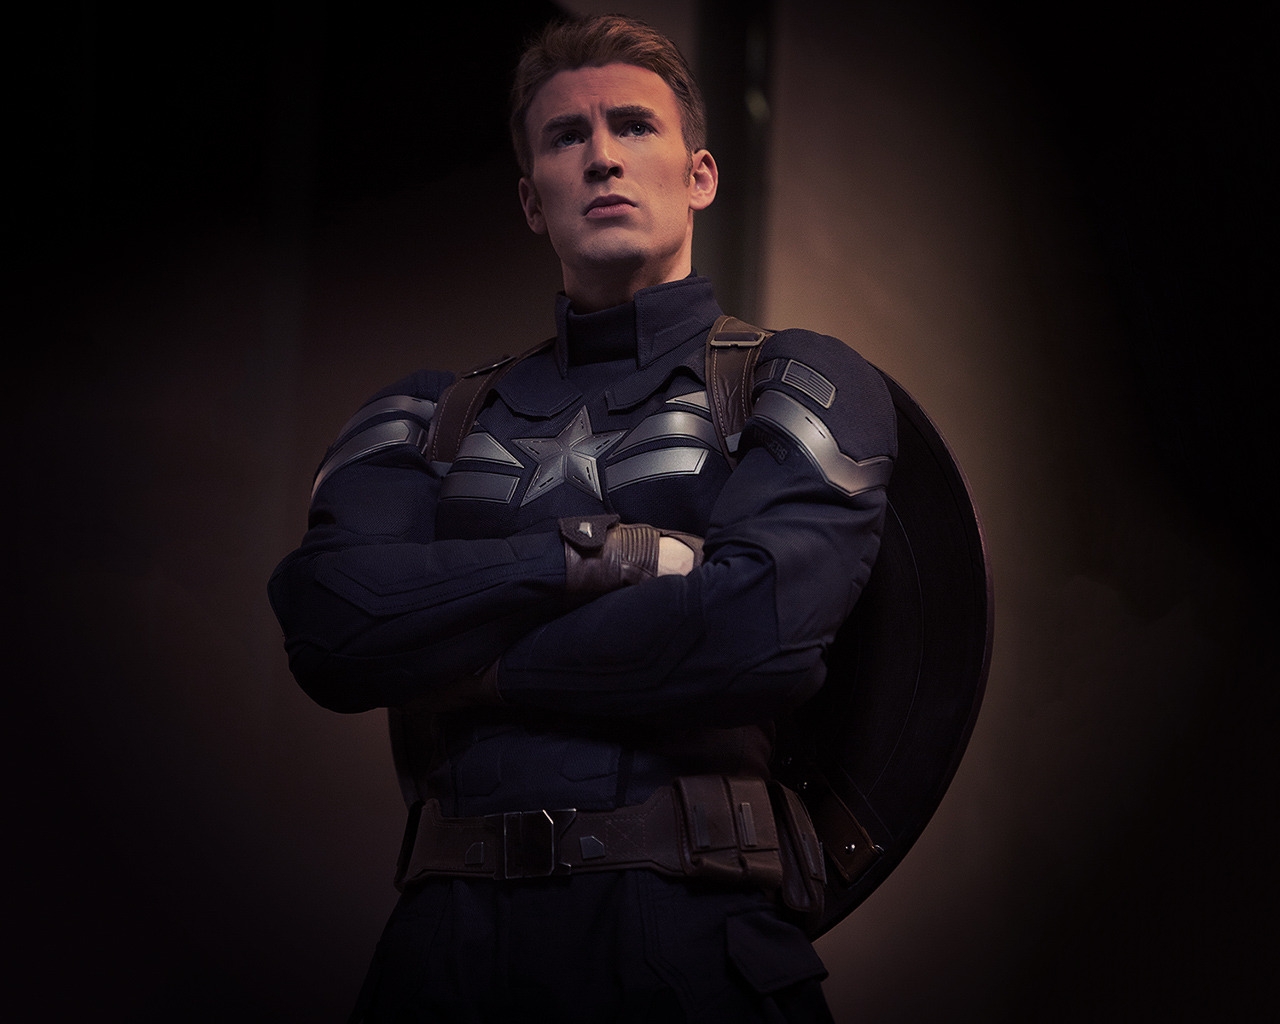 Captain America Marvel for 1280 x 1024 resolution